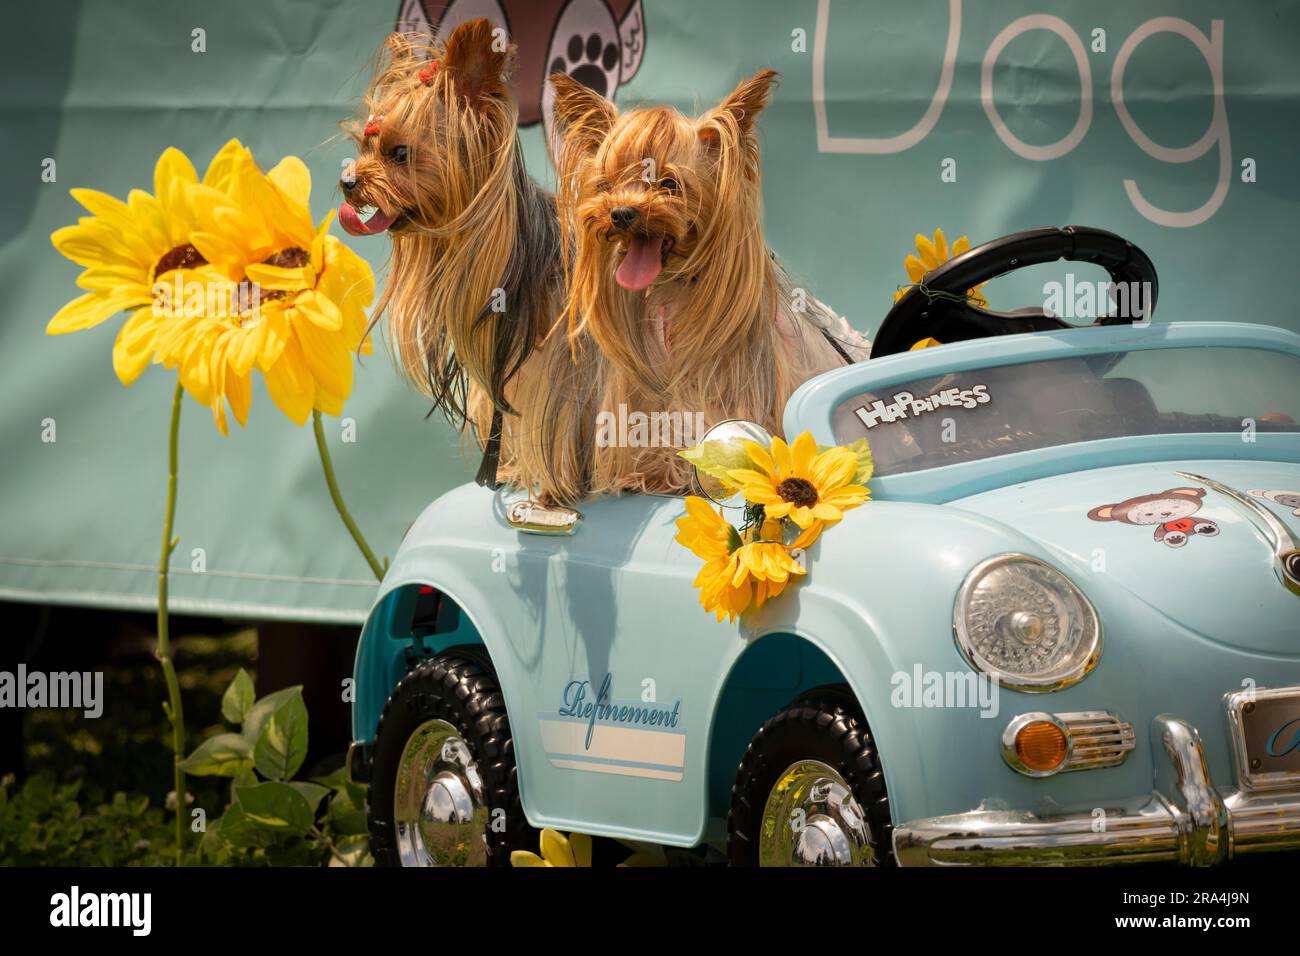 Des terriers soyeux assis dans une voiture jouet un jour ensoleillé Banque D'Images